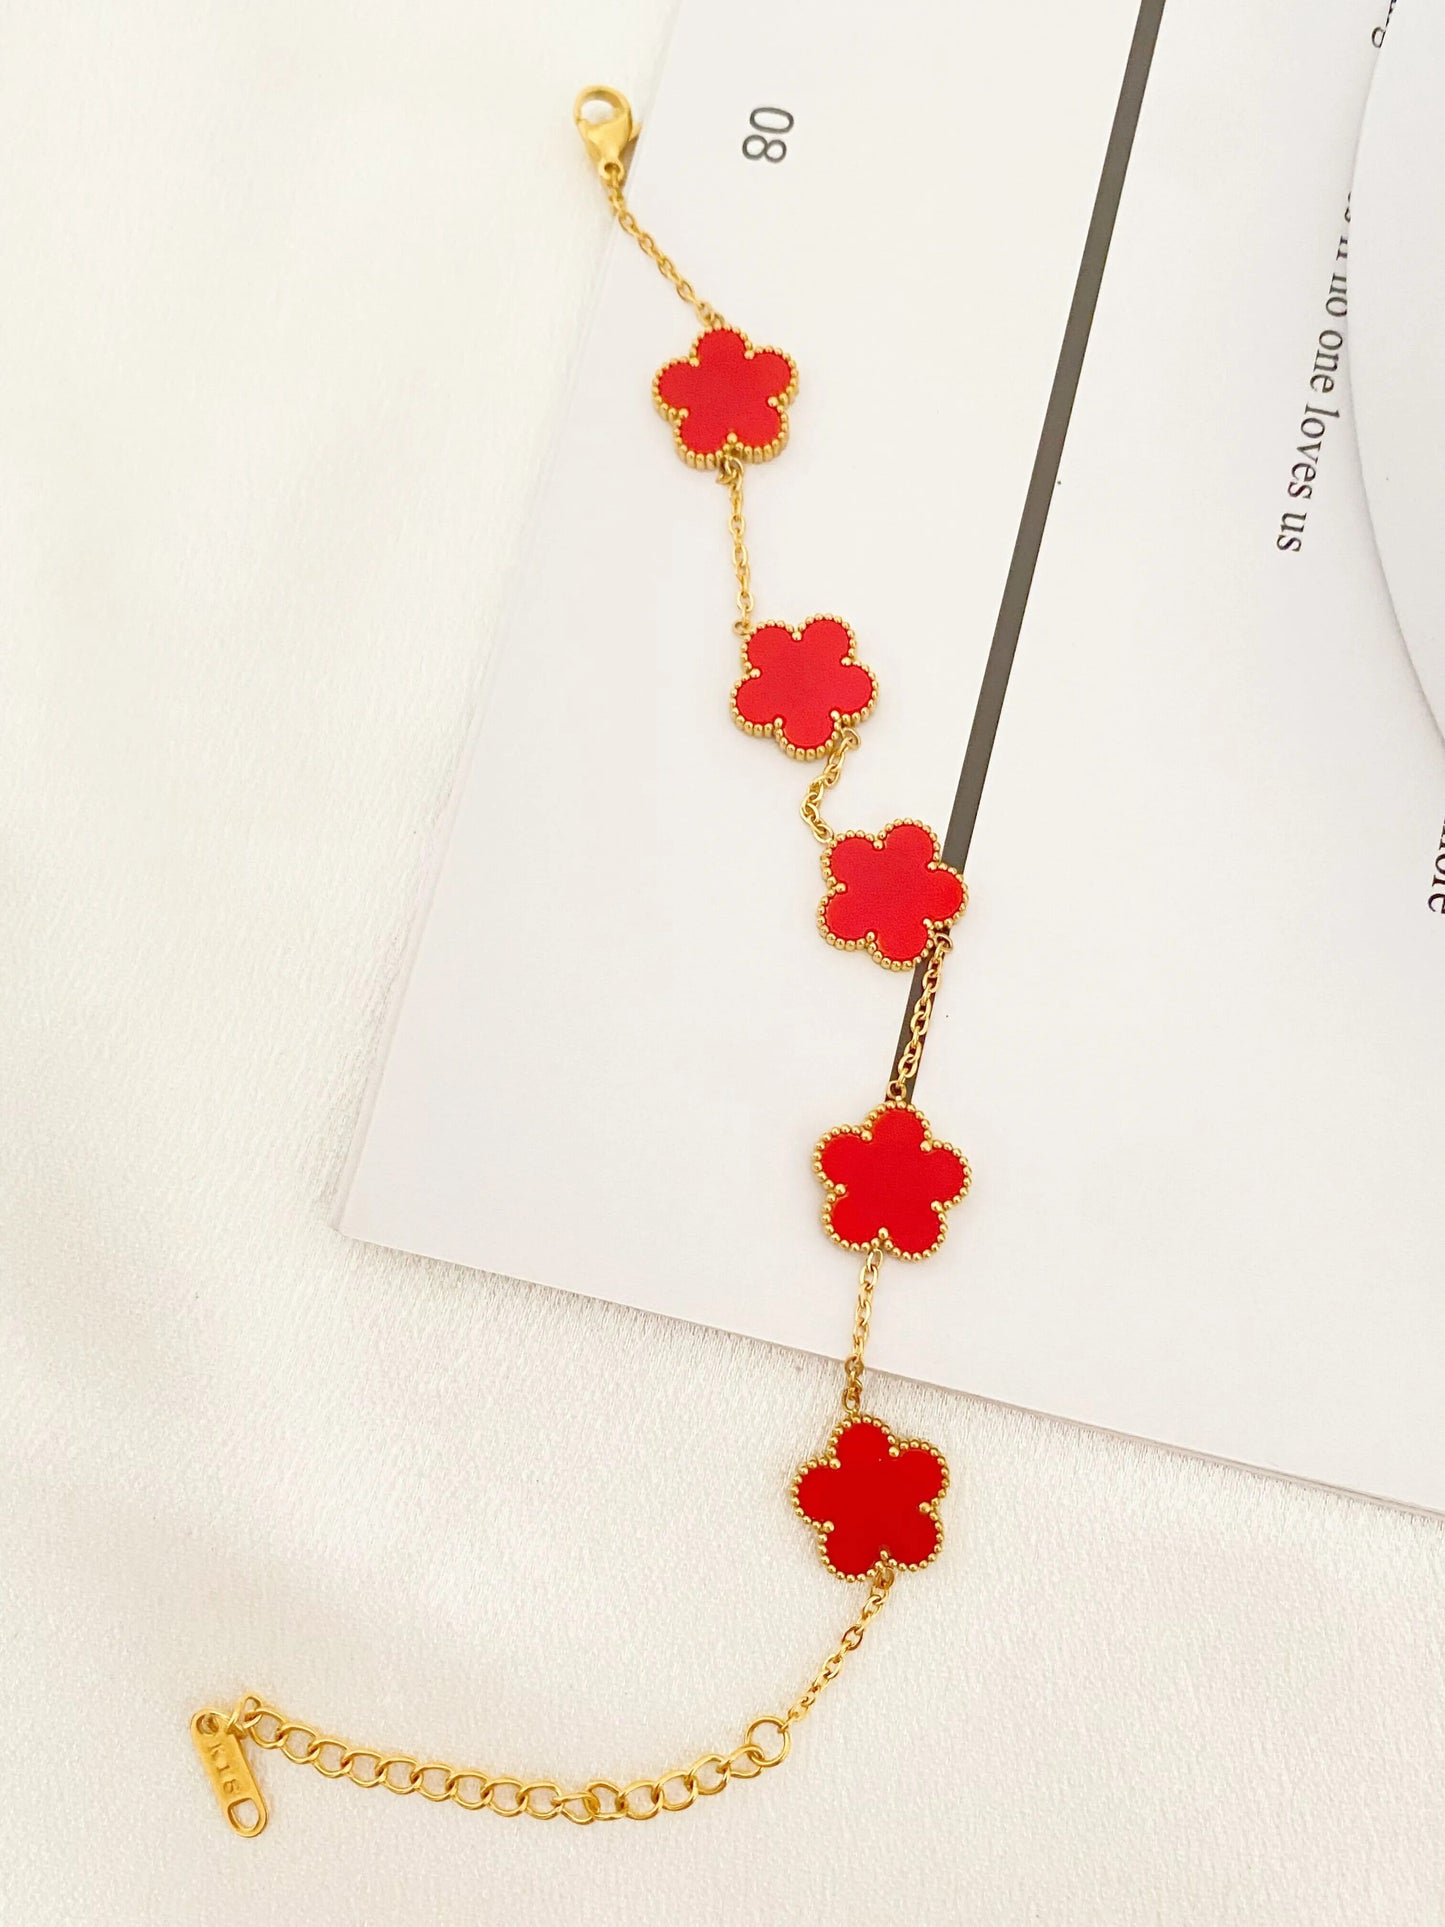 Bracelet Fleur Inspiration Van Cleef & Arpels